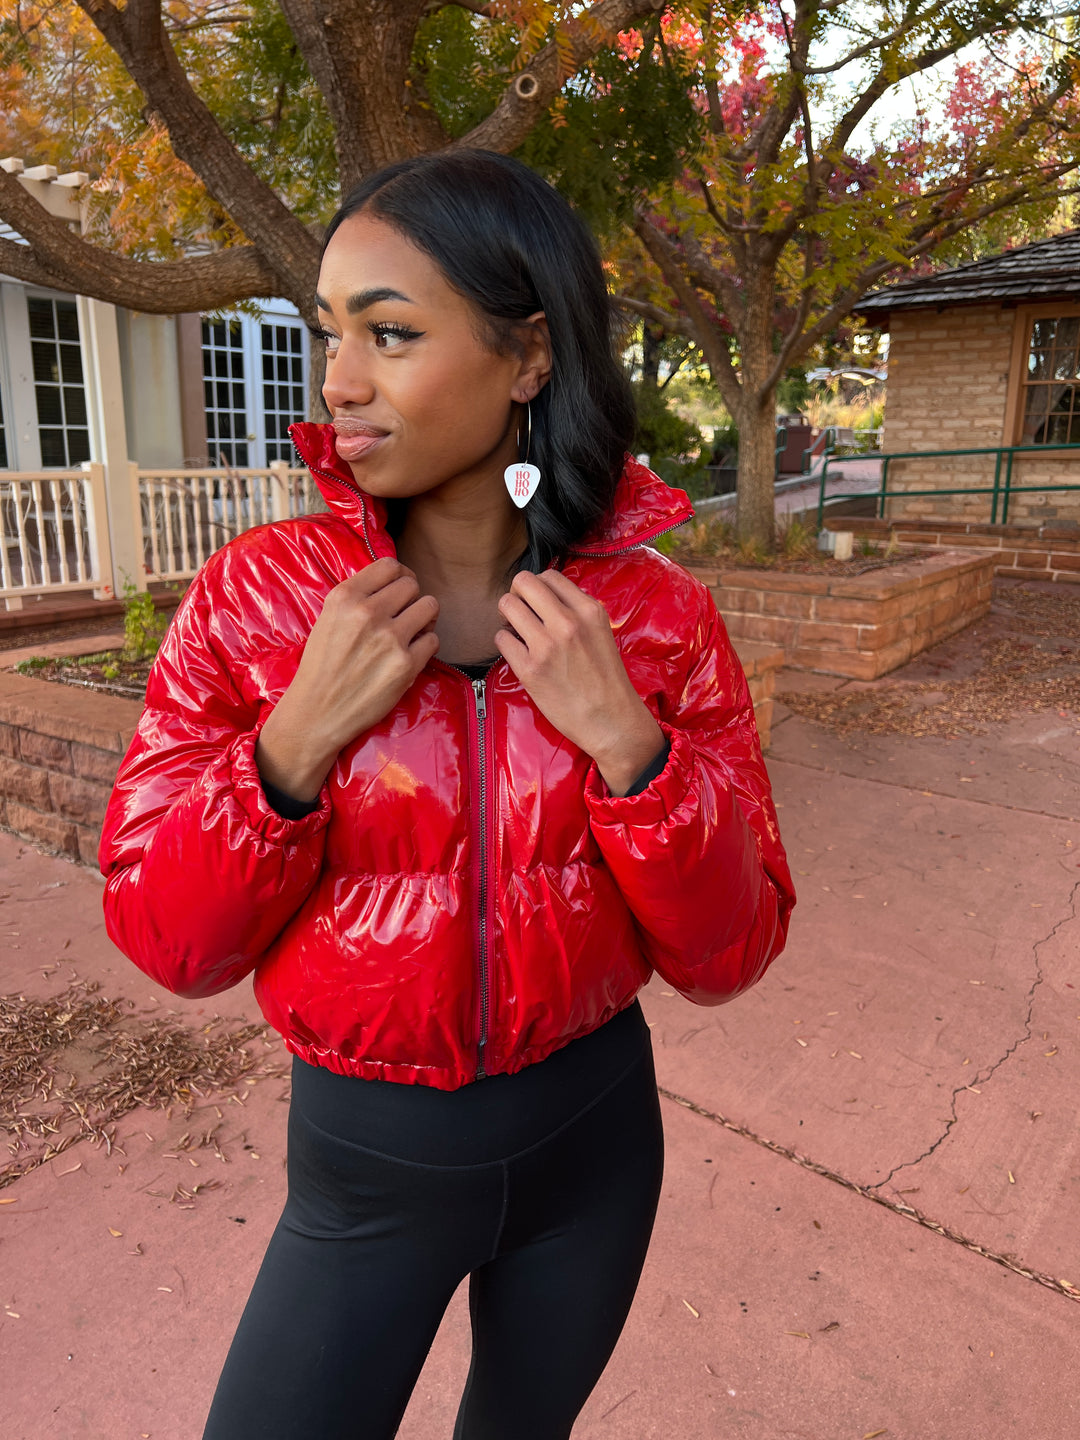 Groupie Love Women's Red Crop Puffer Jacket